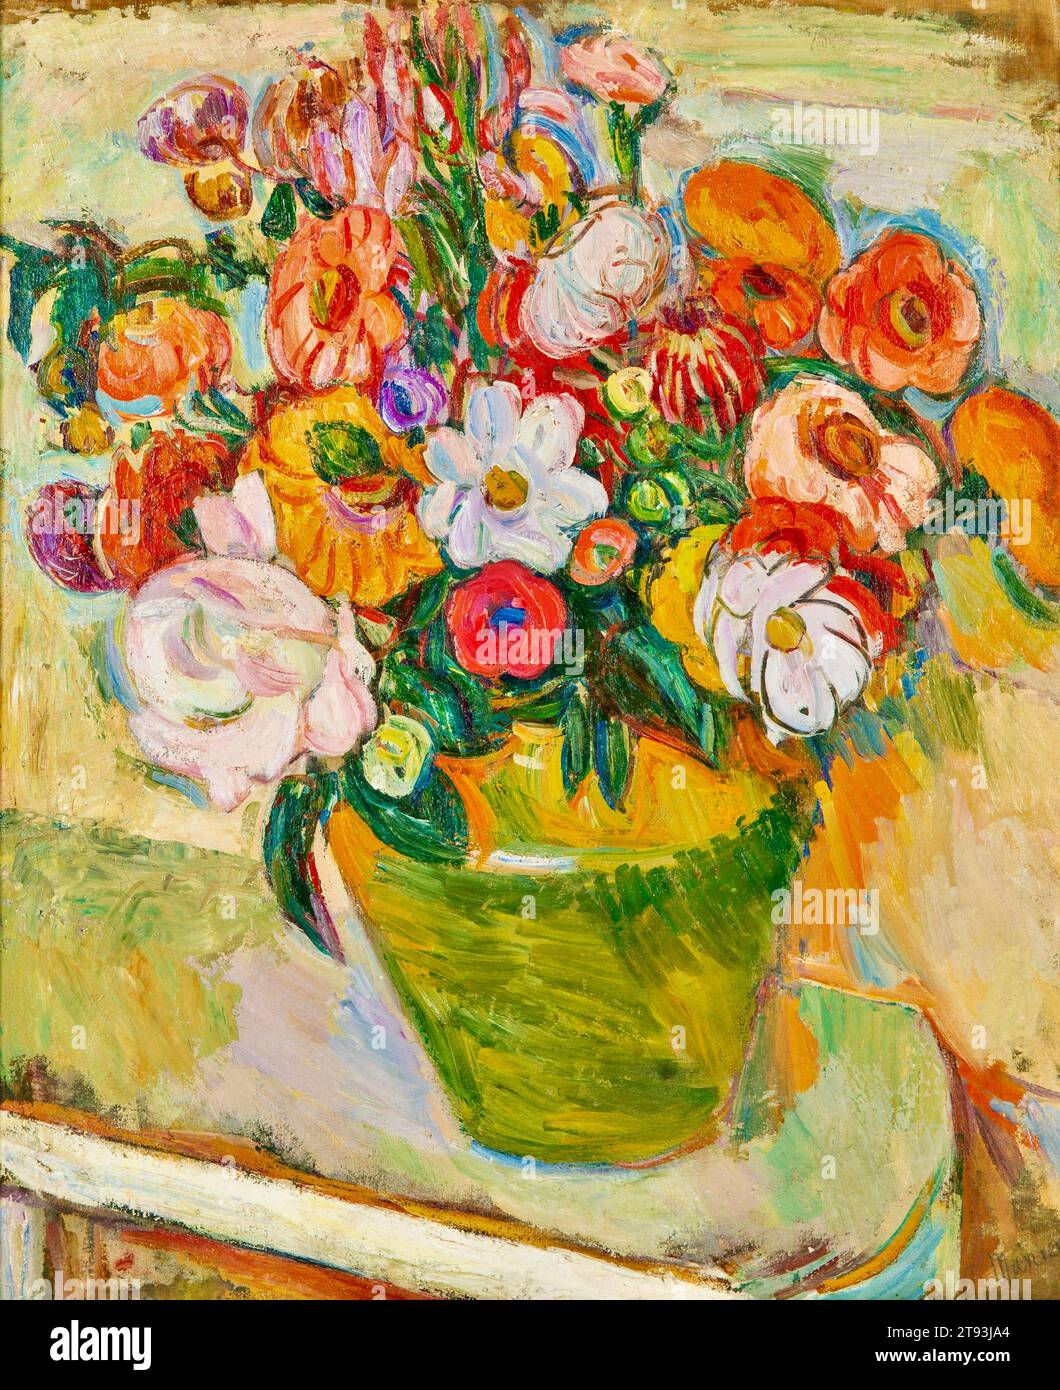 Abraham Manievich (artiste expressionniste ukrainien-américain) - bouquet de fleurs - c1930 Banque D'Images